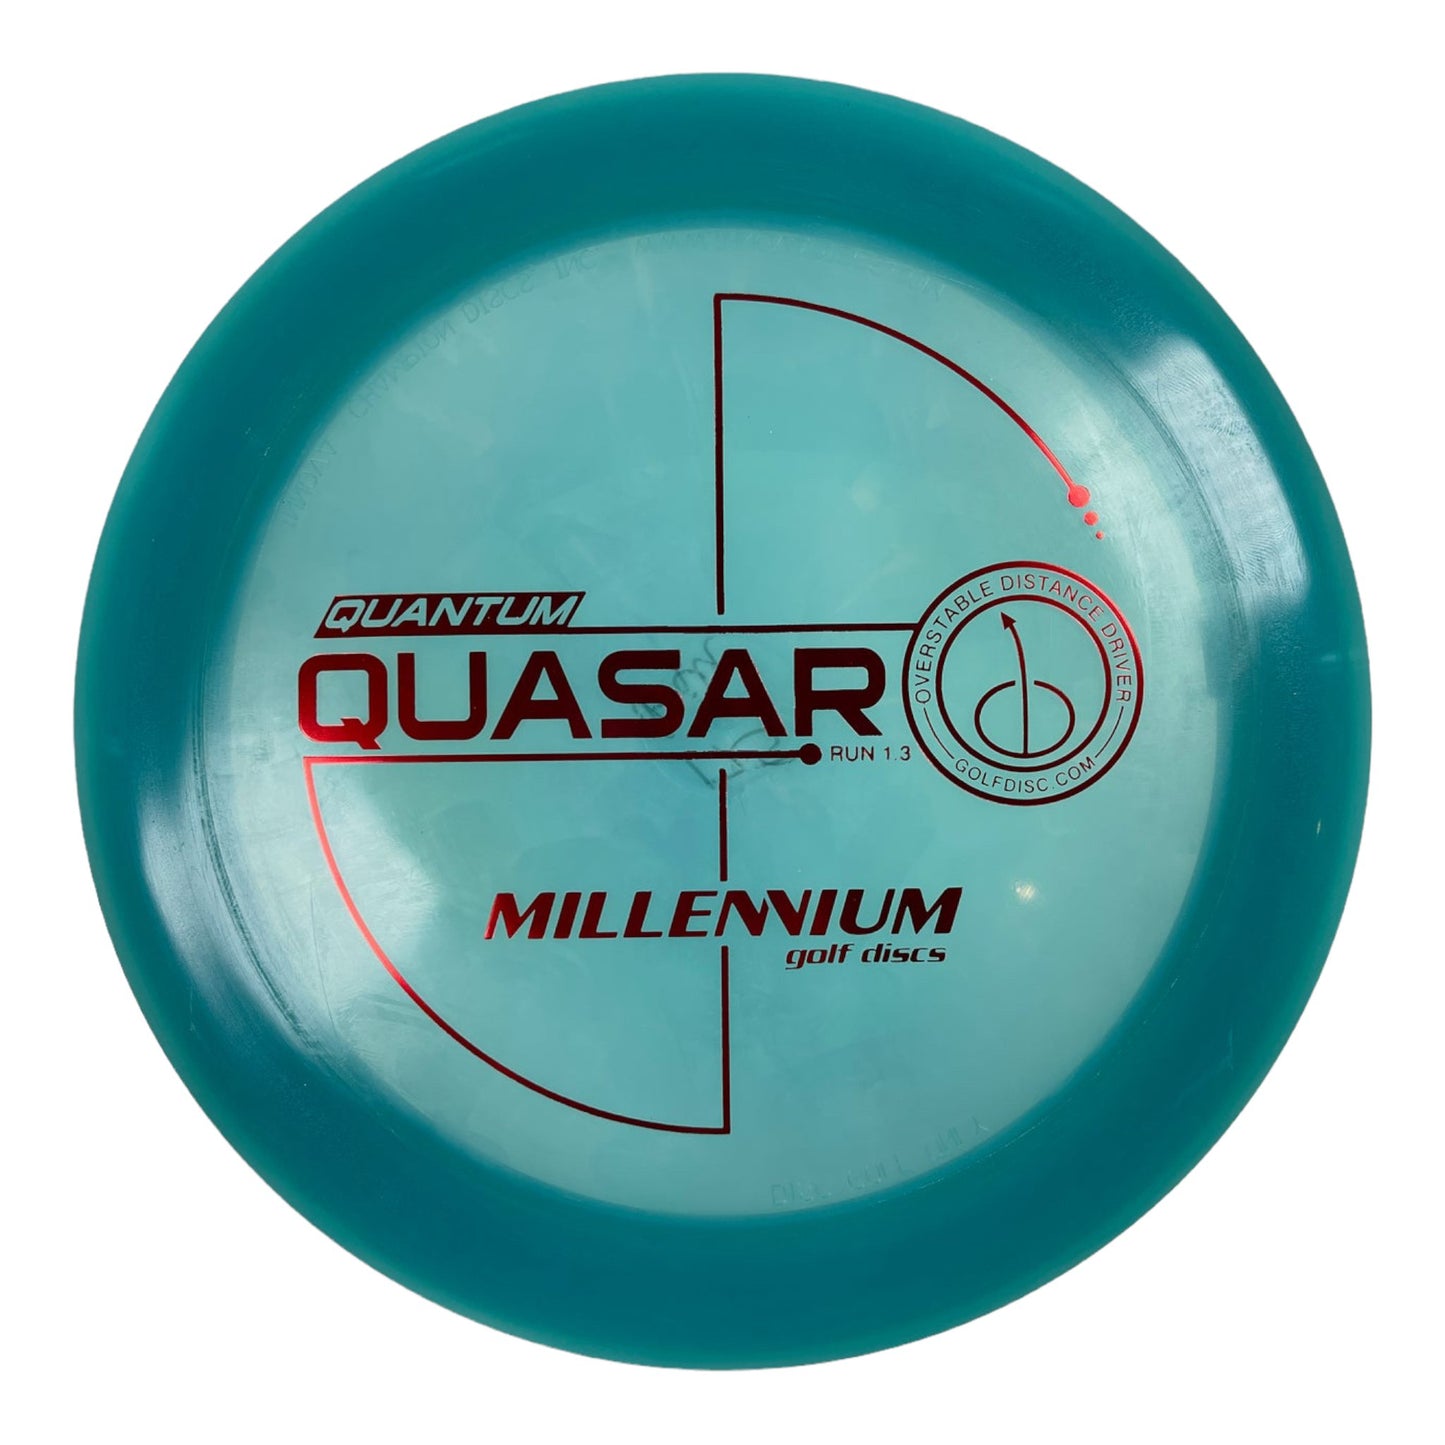 Millennium Golf Discs Quasar | Quantum | Blue/Red 175g Disc Golf